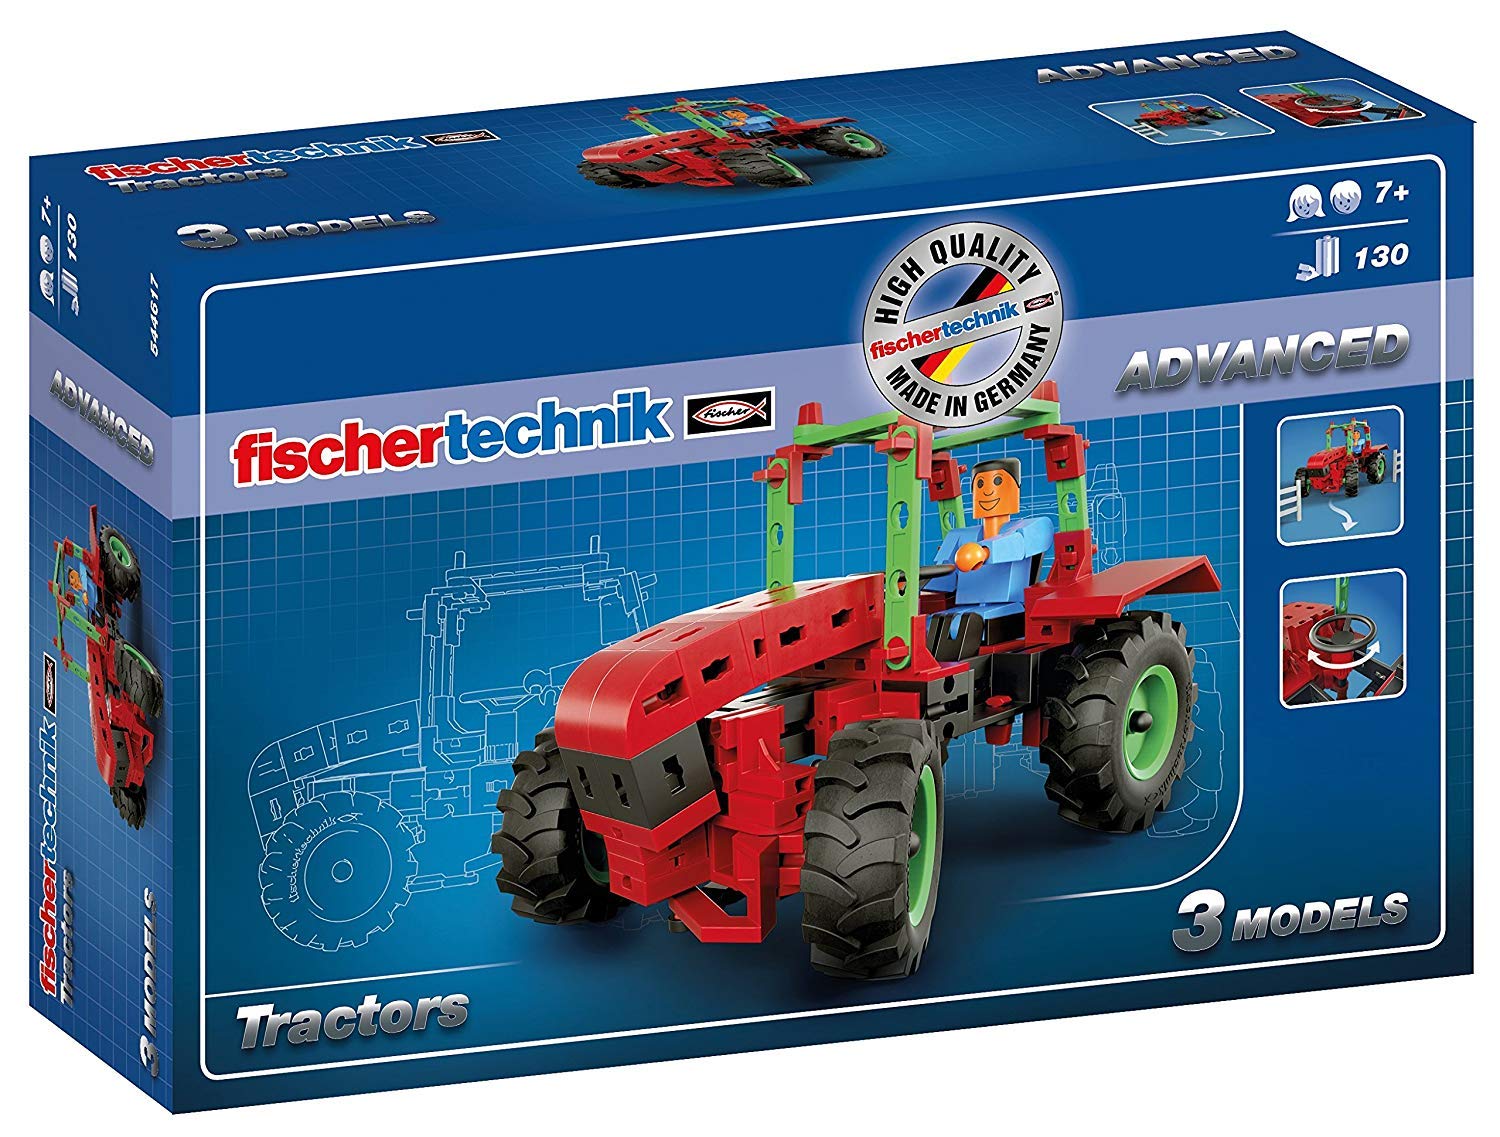 Fischertechnik Tractors Construction